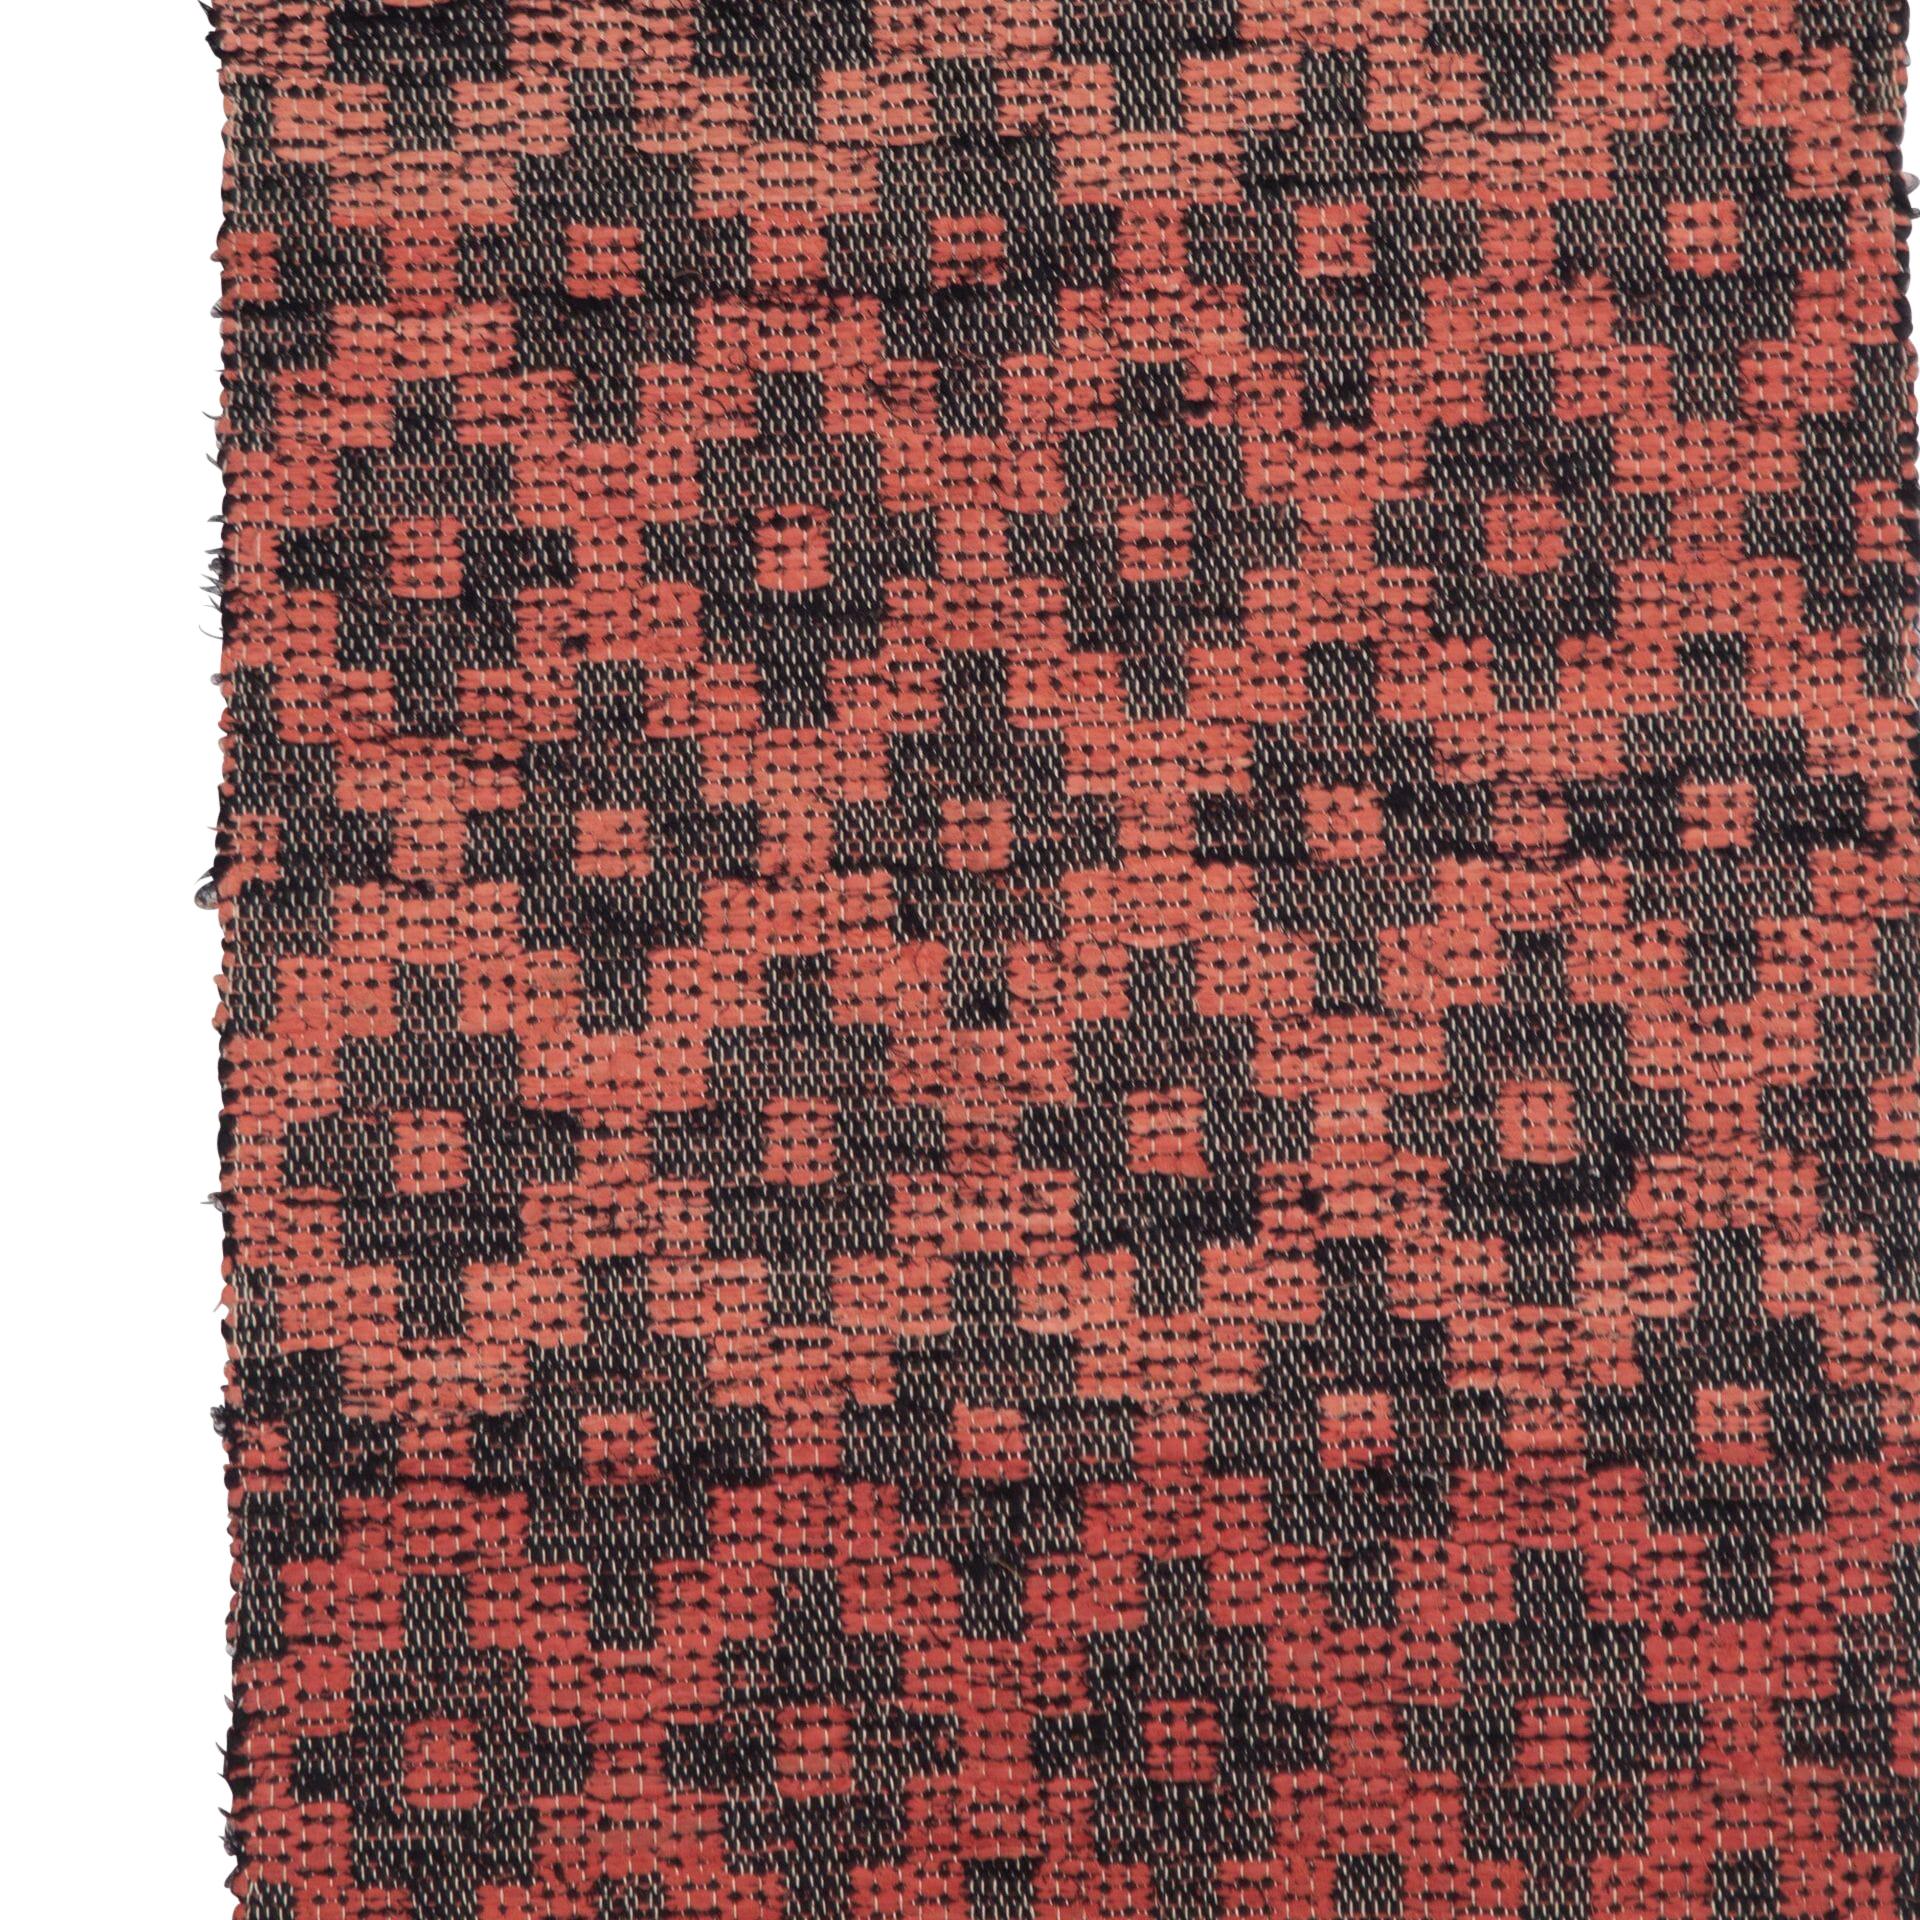 Traditioneller schwedischer Teppich des 20. Jahrhunderts mit geometrischem Muster. 
Um 1950.